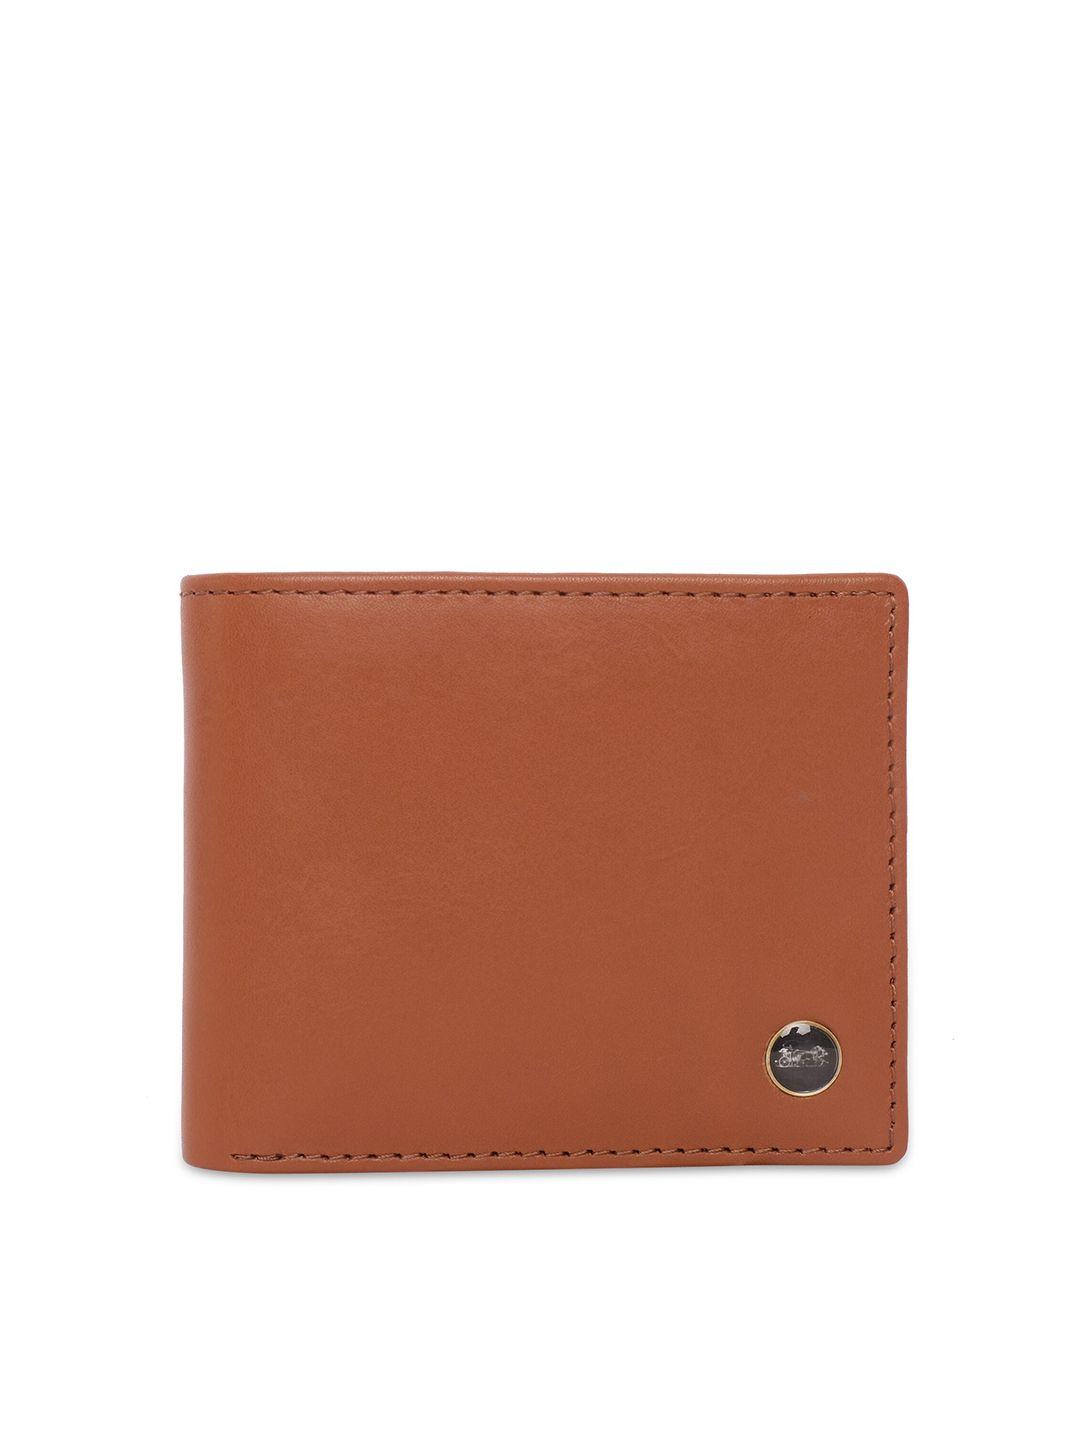 belwaba men tan leather two fold wallet